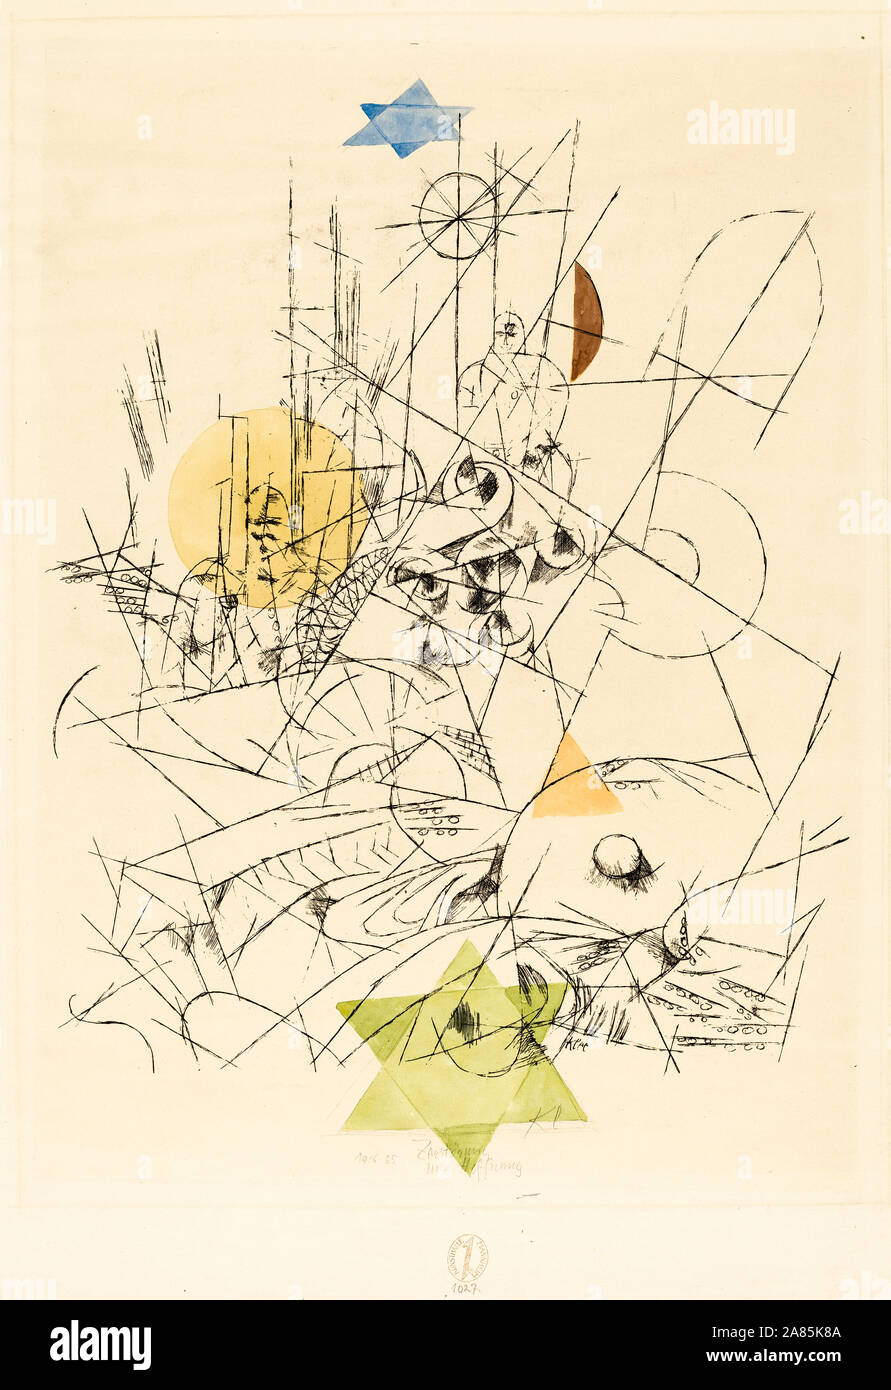 Paul Klee, de esperanza y de destrucción (Zerstörung und Hoffnung), impresión, 1916 Foto de stock